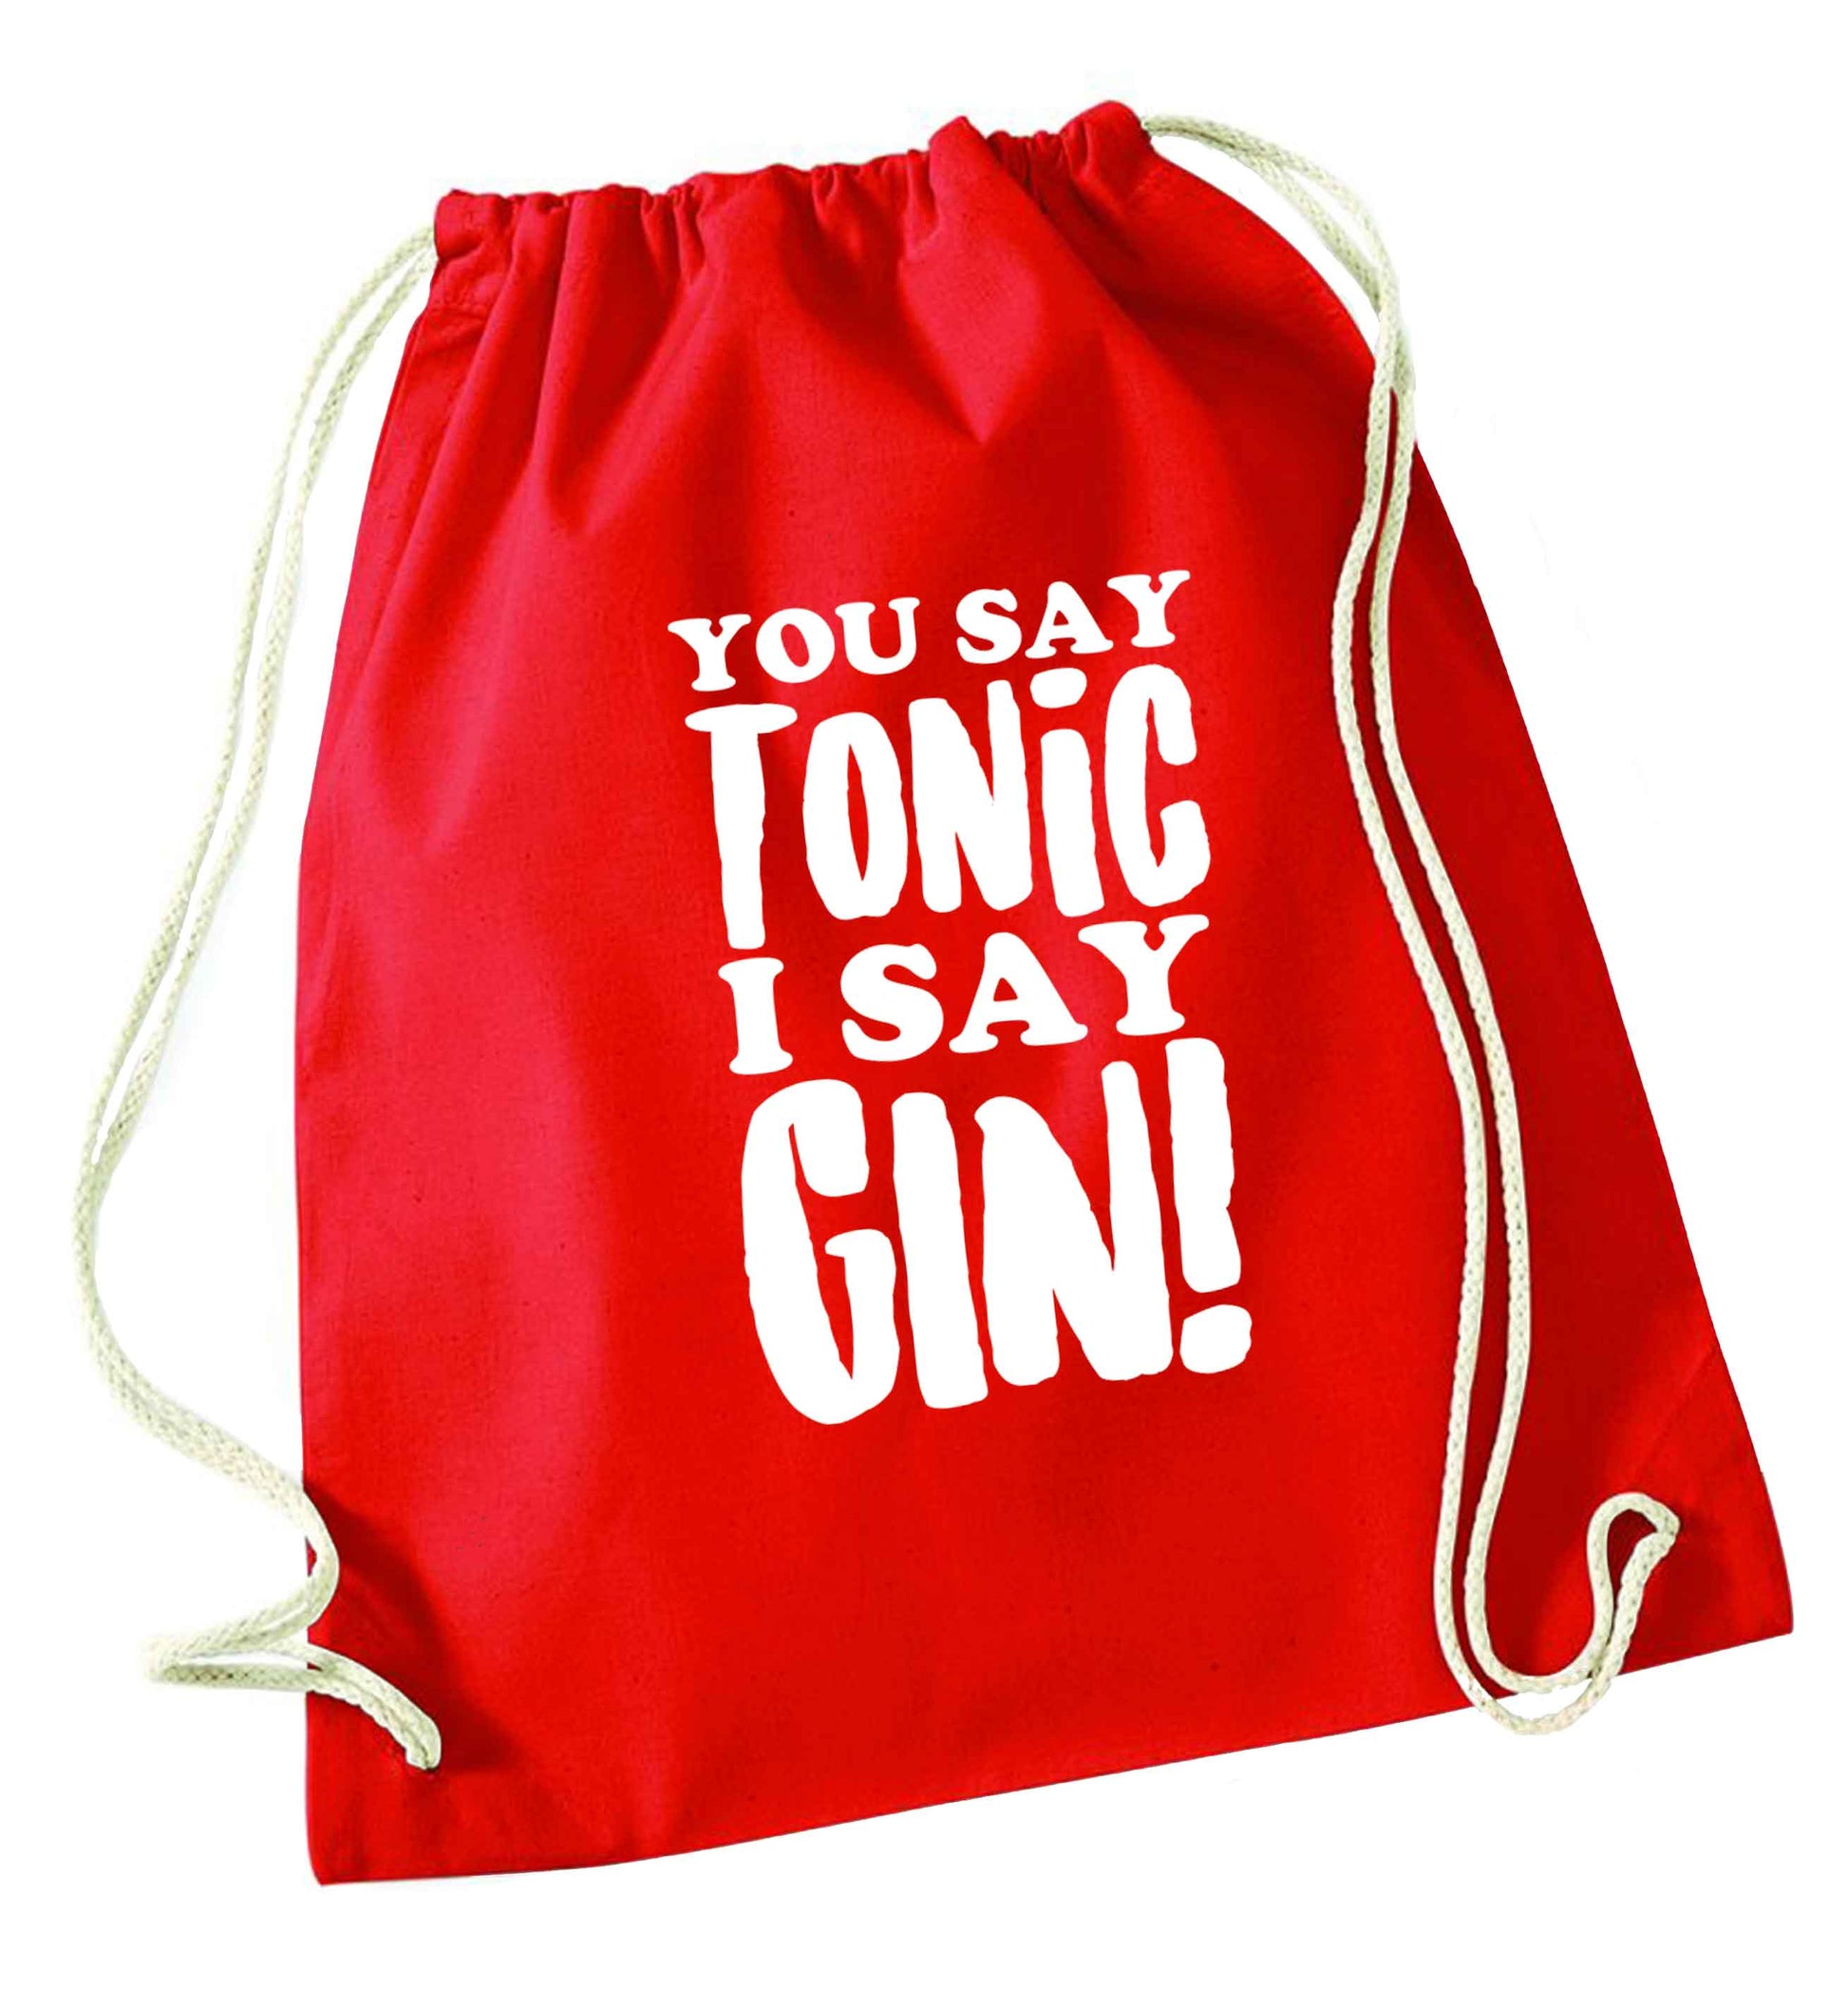 You say tonic I say gin red drawstring bag 